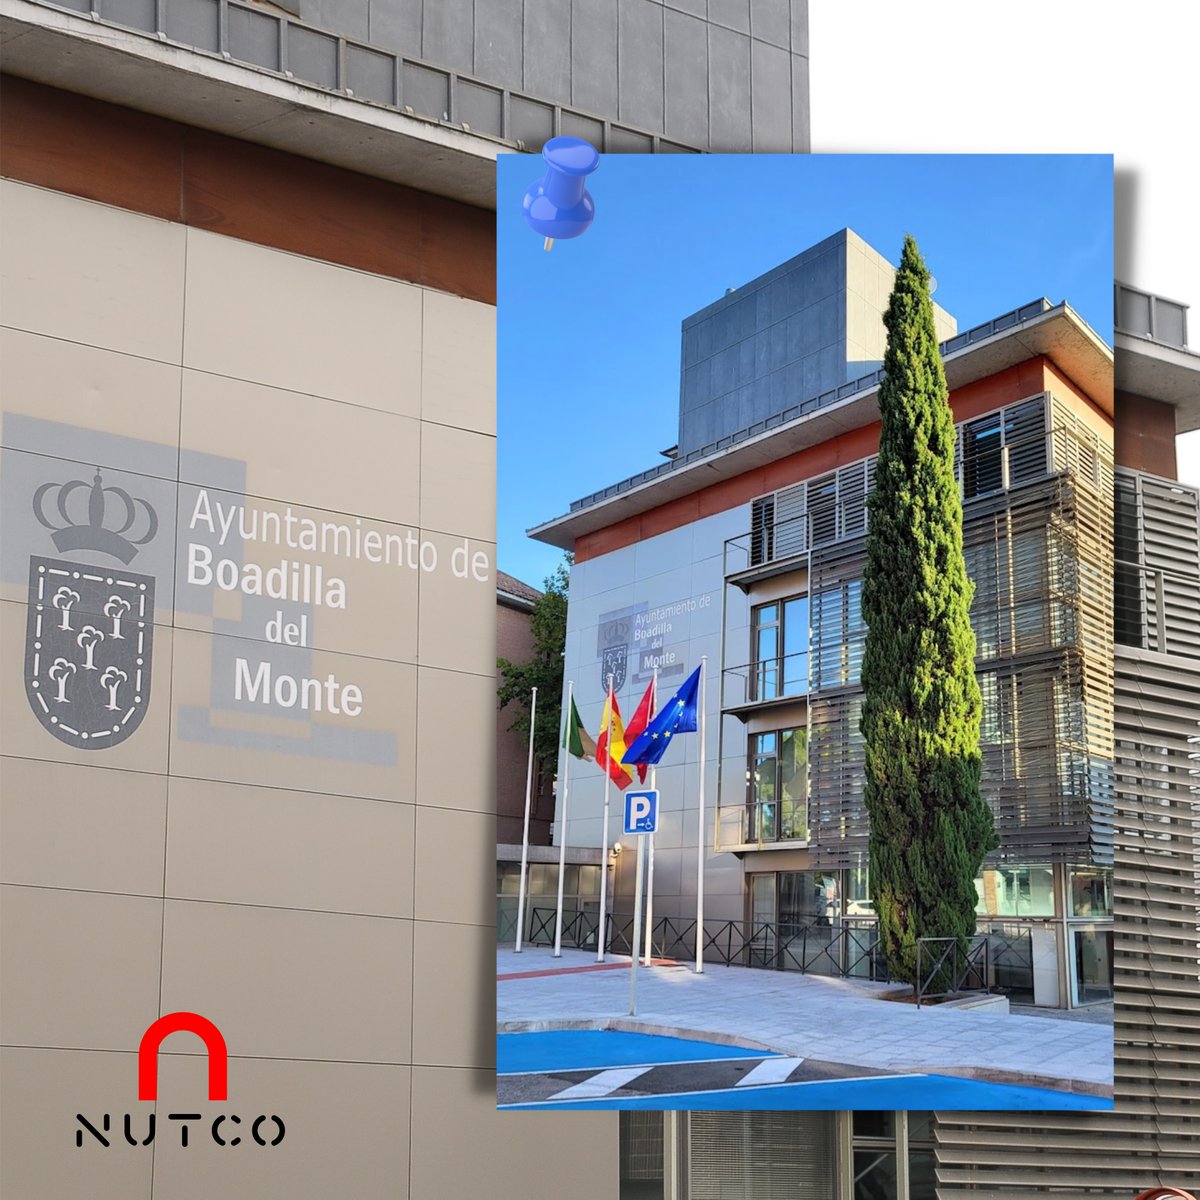 🗣 NUTCO también se ha desplazado en estos días a Boadilla del Monte (Madrid). Nos hemos podido reunir con el personal municipal para dar continuidad a los proyectos vigentes con la administración. ¡Visita nuestra web y conoce todos nuestros servicios! 🌐nutco.es